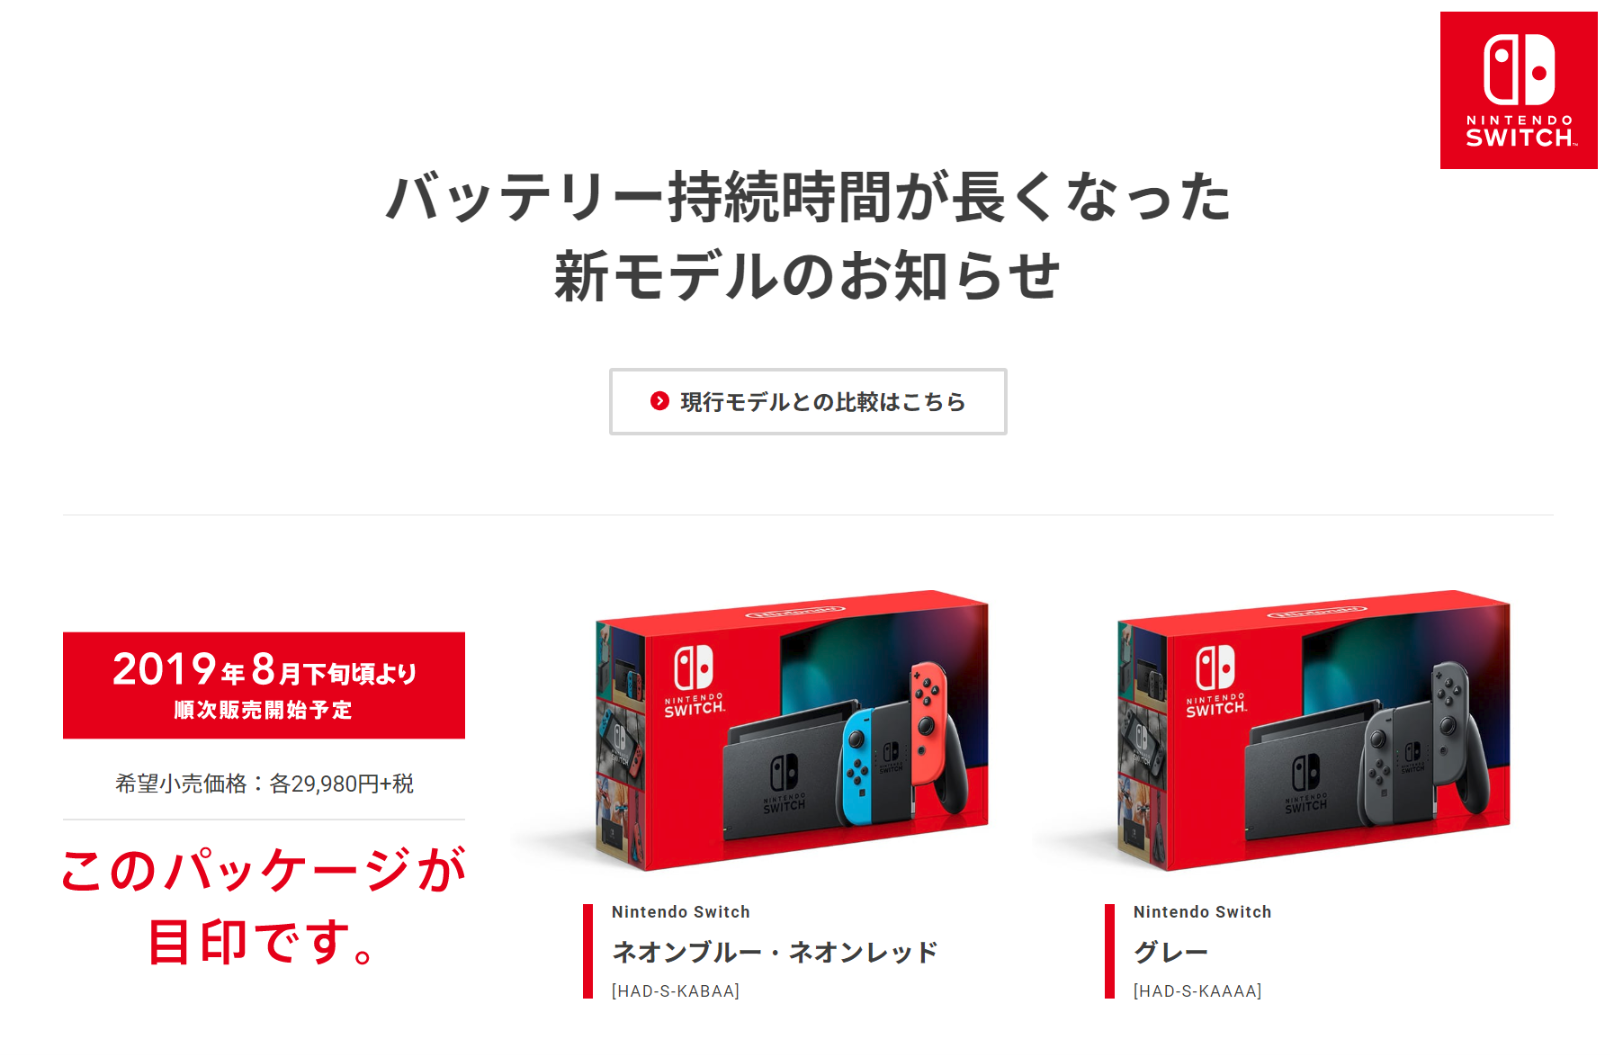 Nintendo Switch バッテリー持続型 ネオンブルーネオンレッド ニンテンドースイッチ - ゲーム